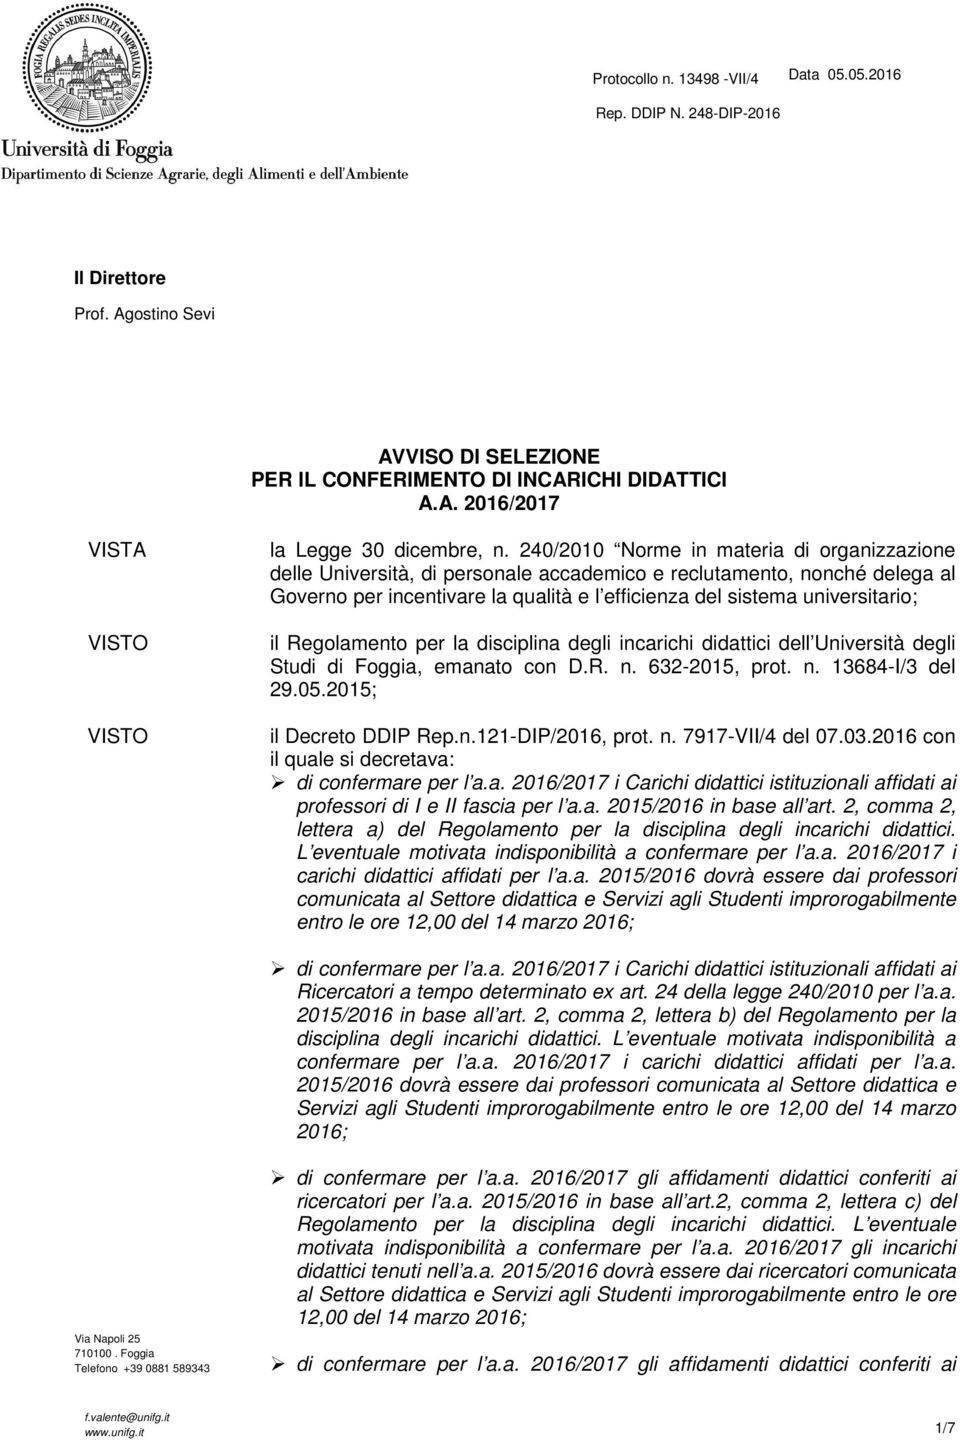 Regolamento per la disciplina degli incarichi didattici dell Università degli Studi di Foggia, emanato con D.R. n. 632-2015, prot. n. 13684-I/3 del 29.05.2015; il Decreto DDIP Rep.n.121-DIP/2016, prot.